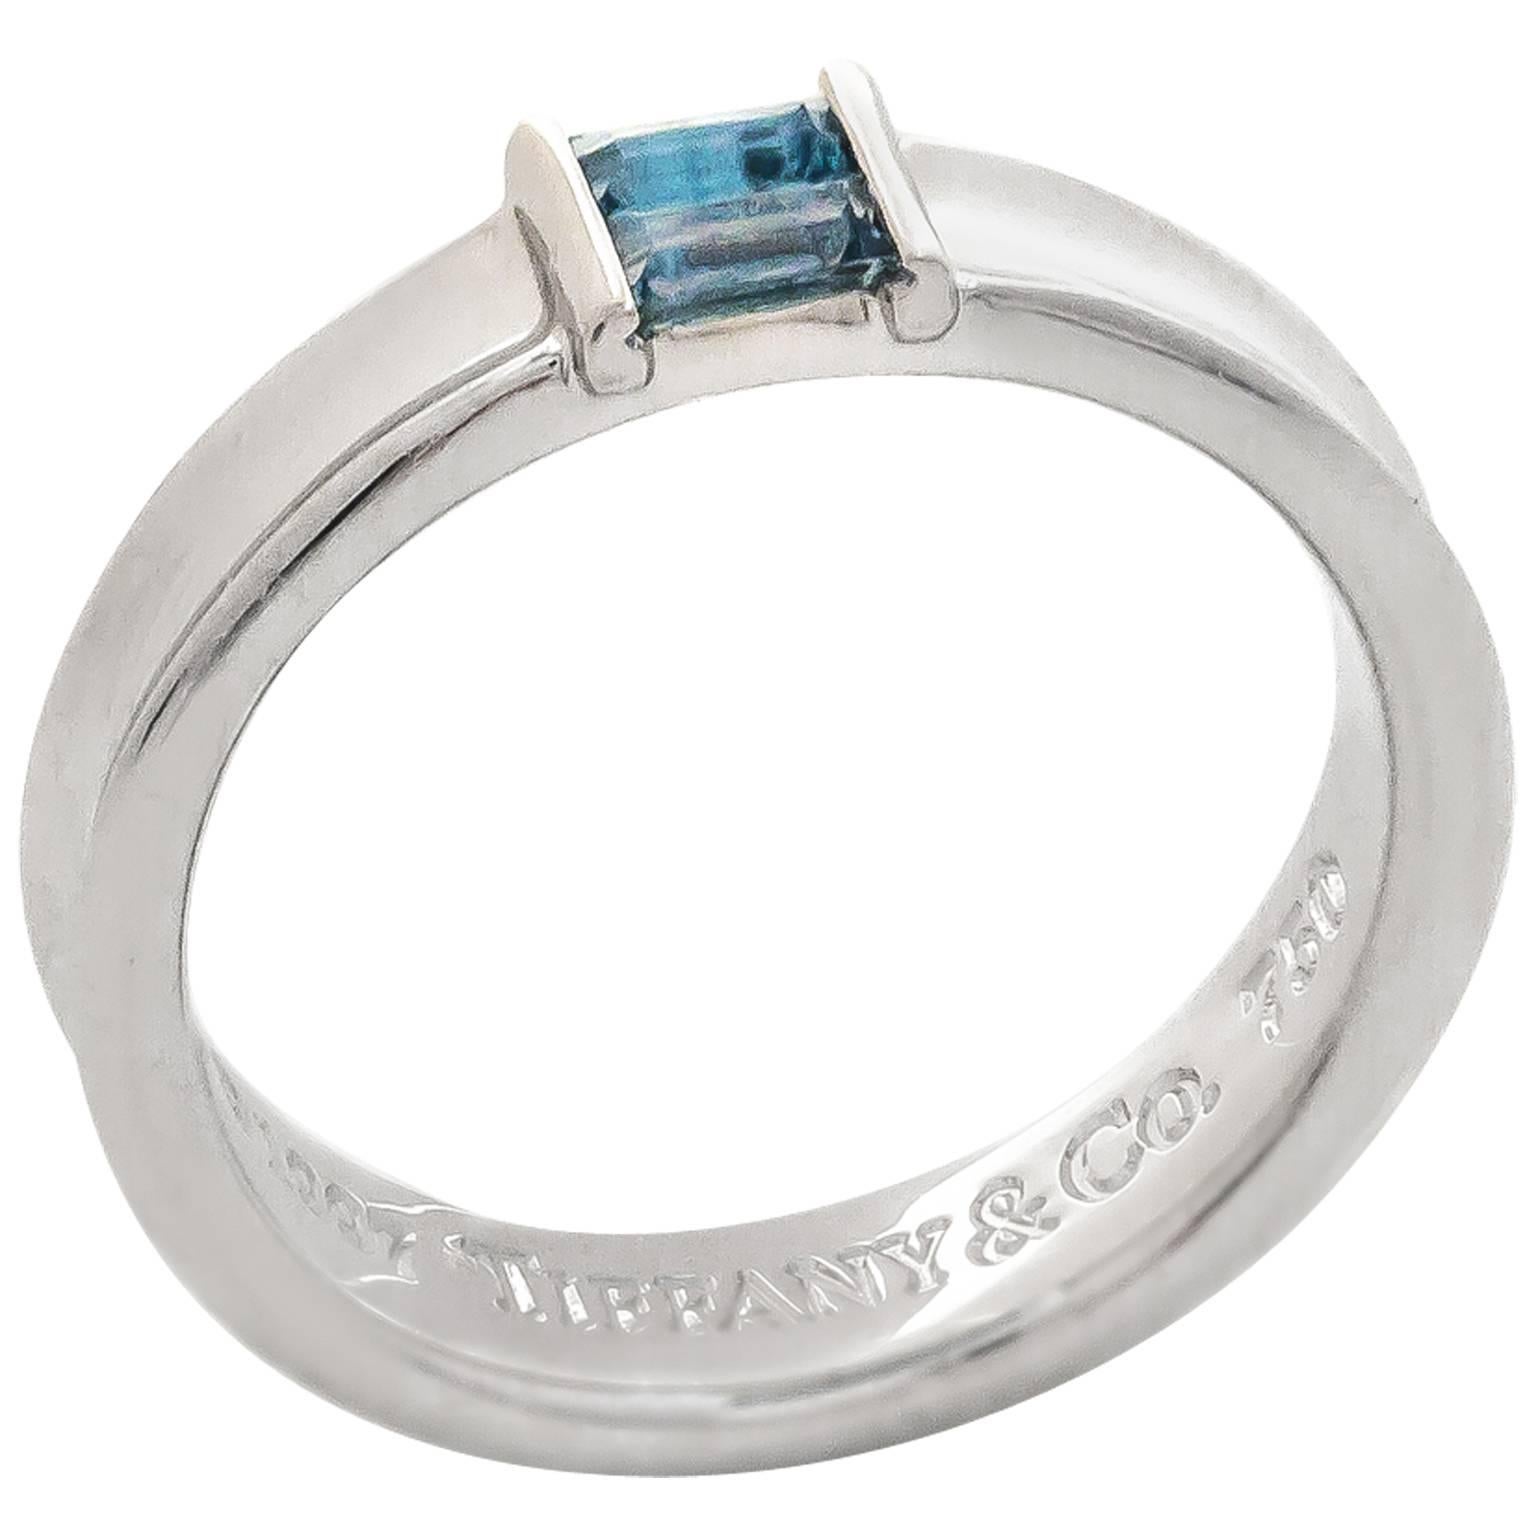 Tiffany & Co. Aquamarine Gold Ring